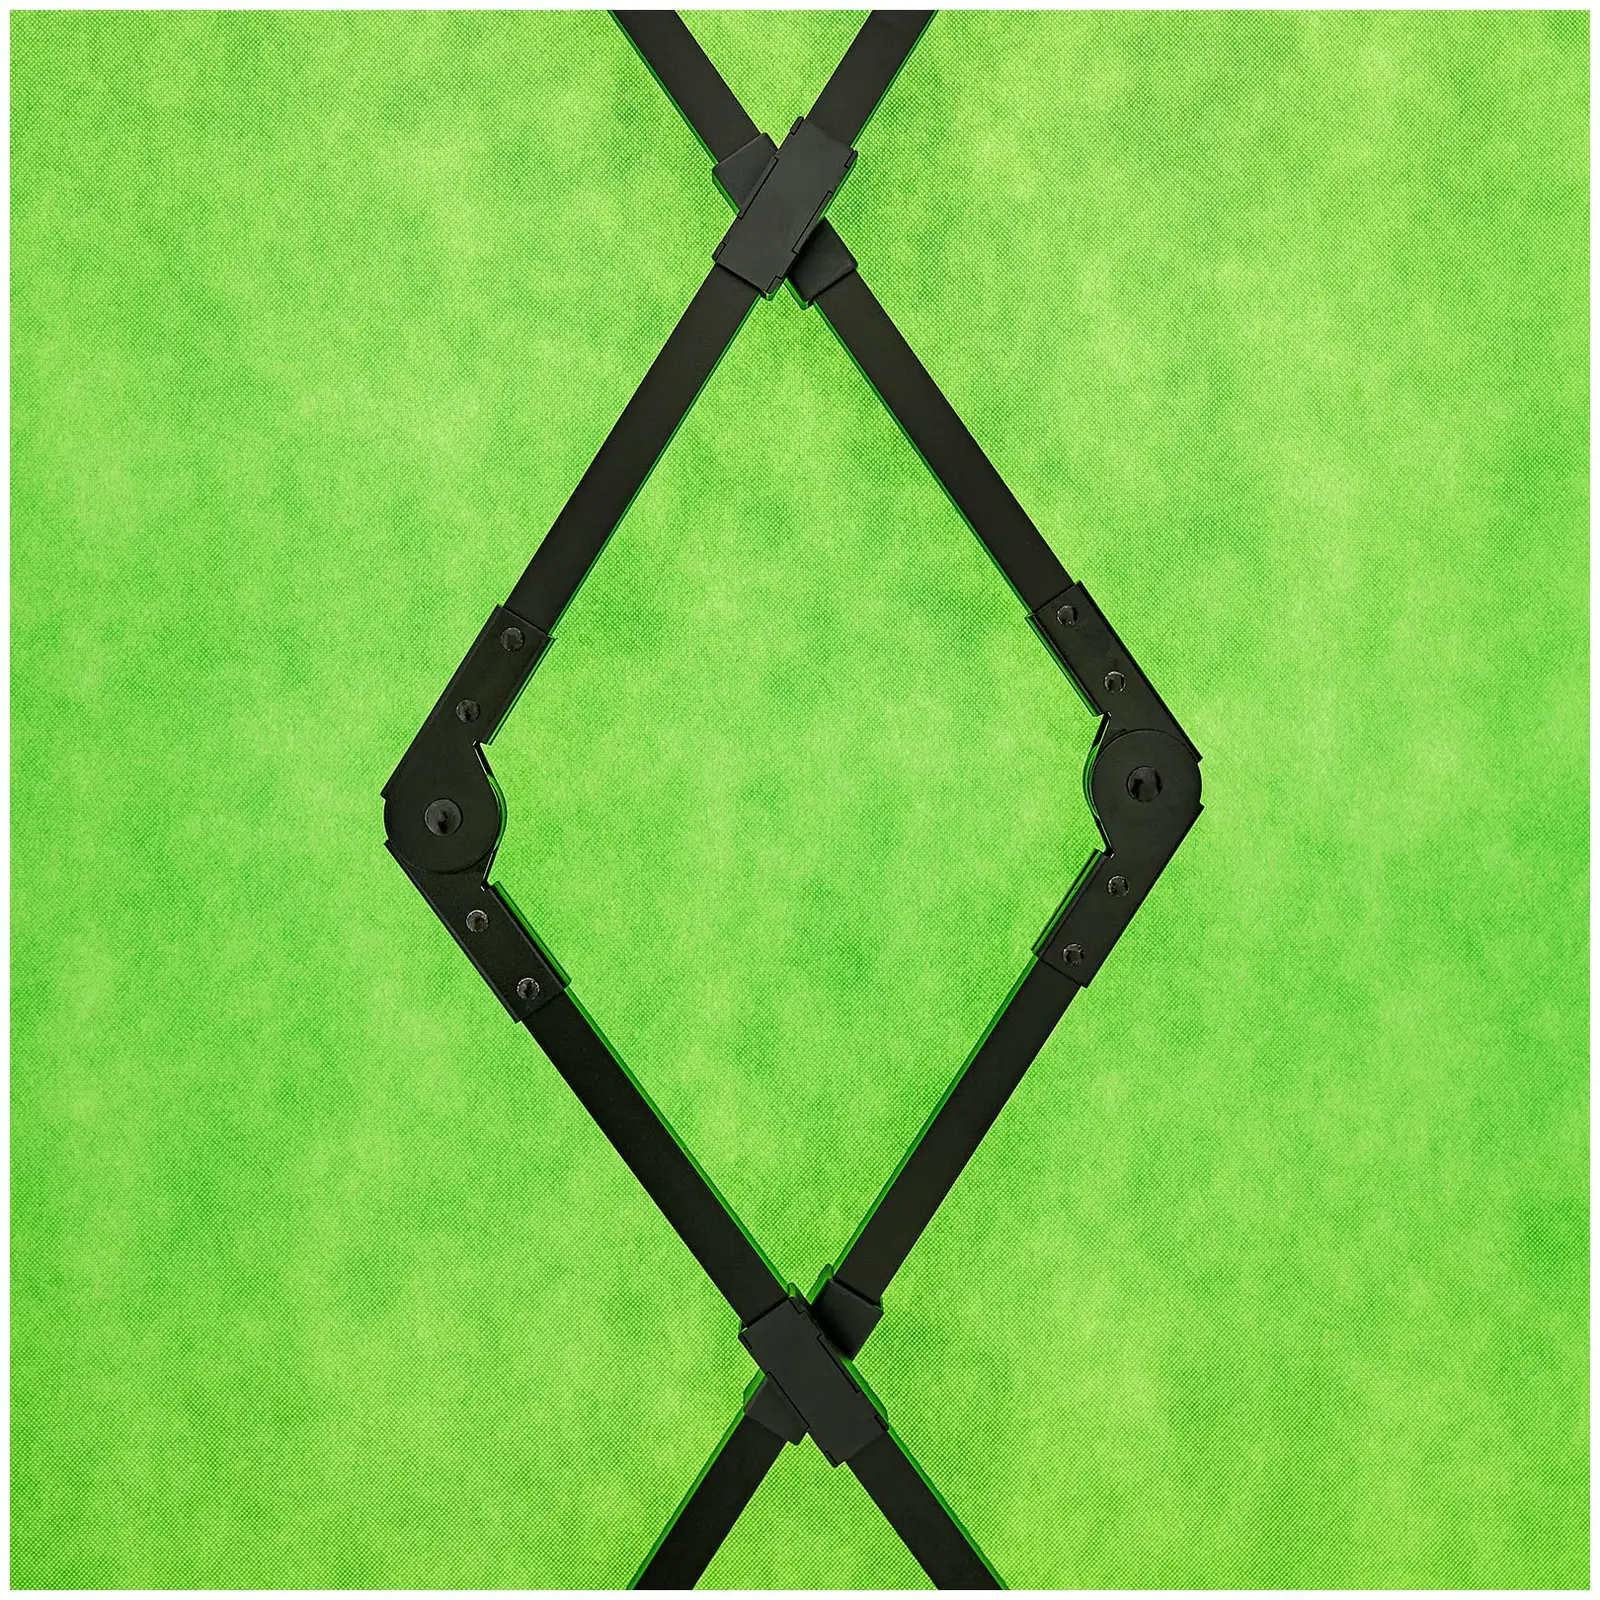 Fundo verde para fotos - expansível - 133,5 x 199 cm